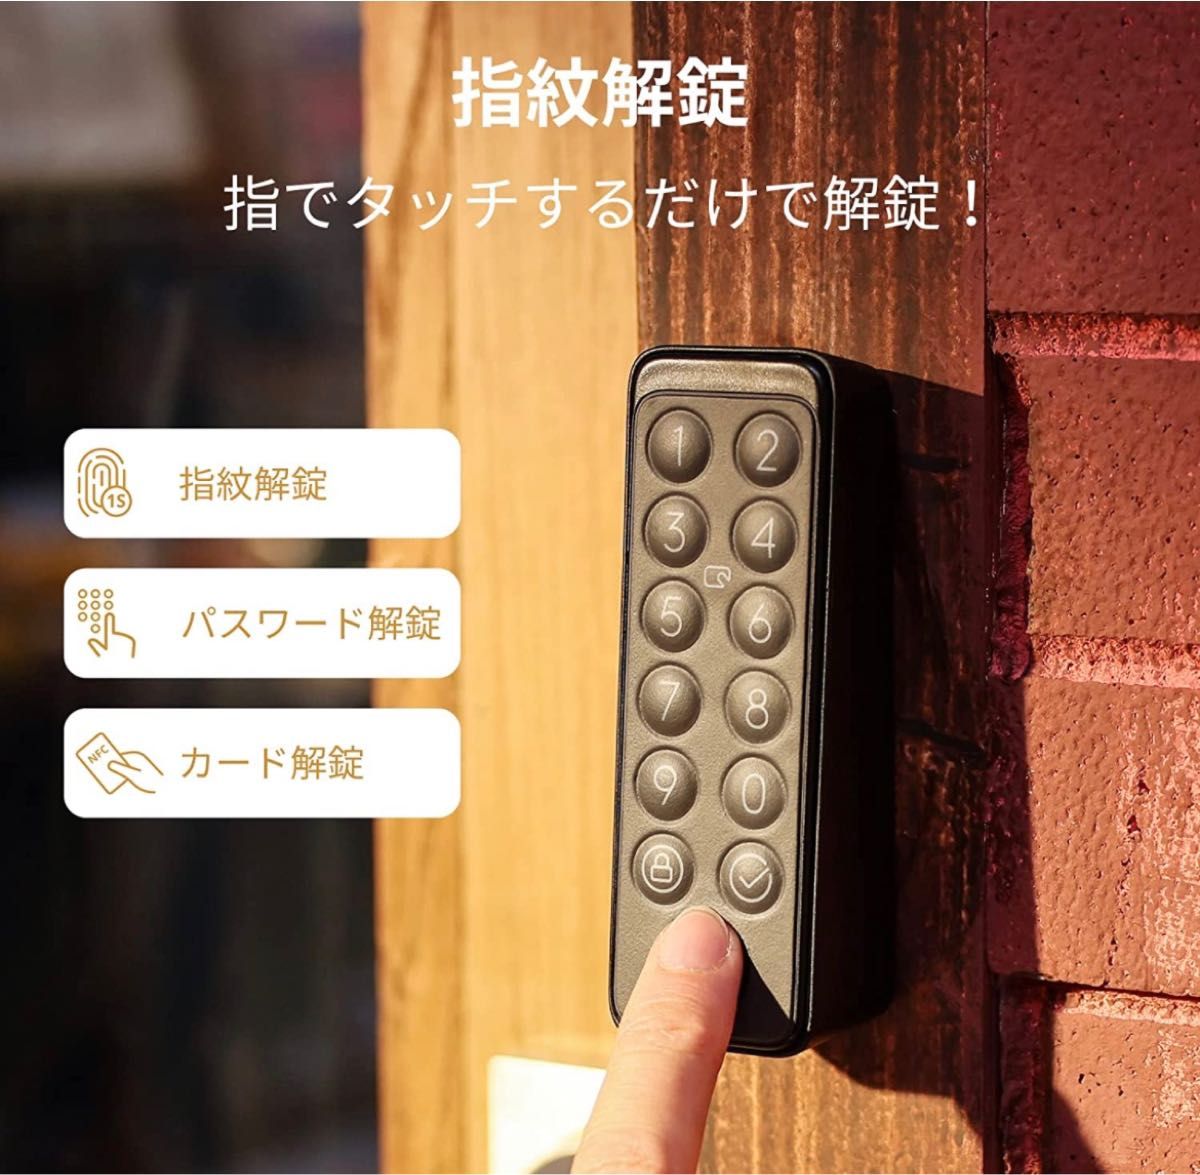 【新品未使用】SwitchBot スマートロック　指紋認証パッド　セット　鍵